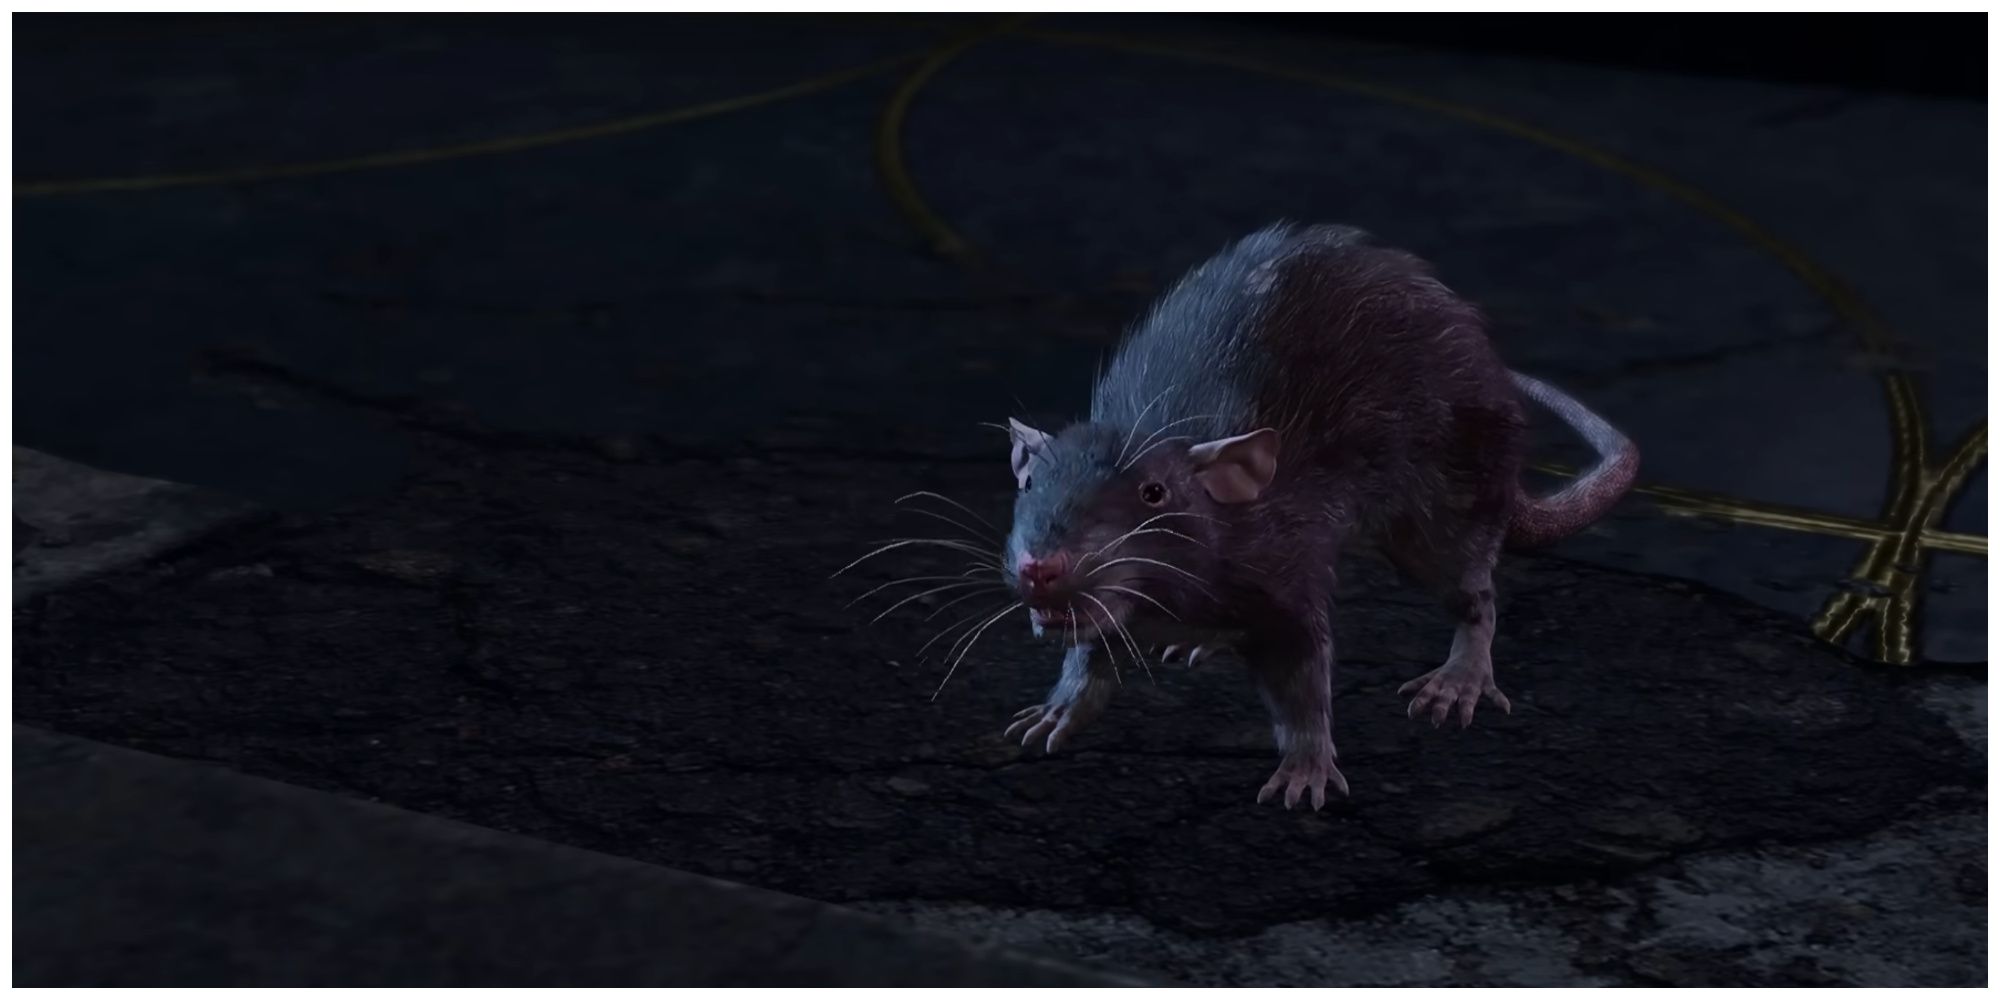 Lyrthindor as a Rat in Baldur's Gate 3